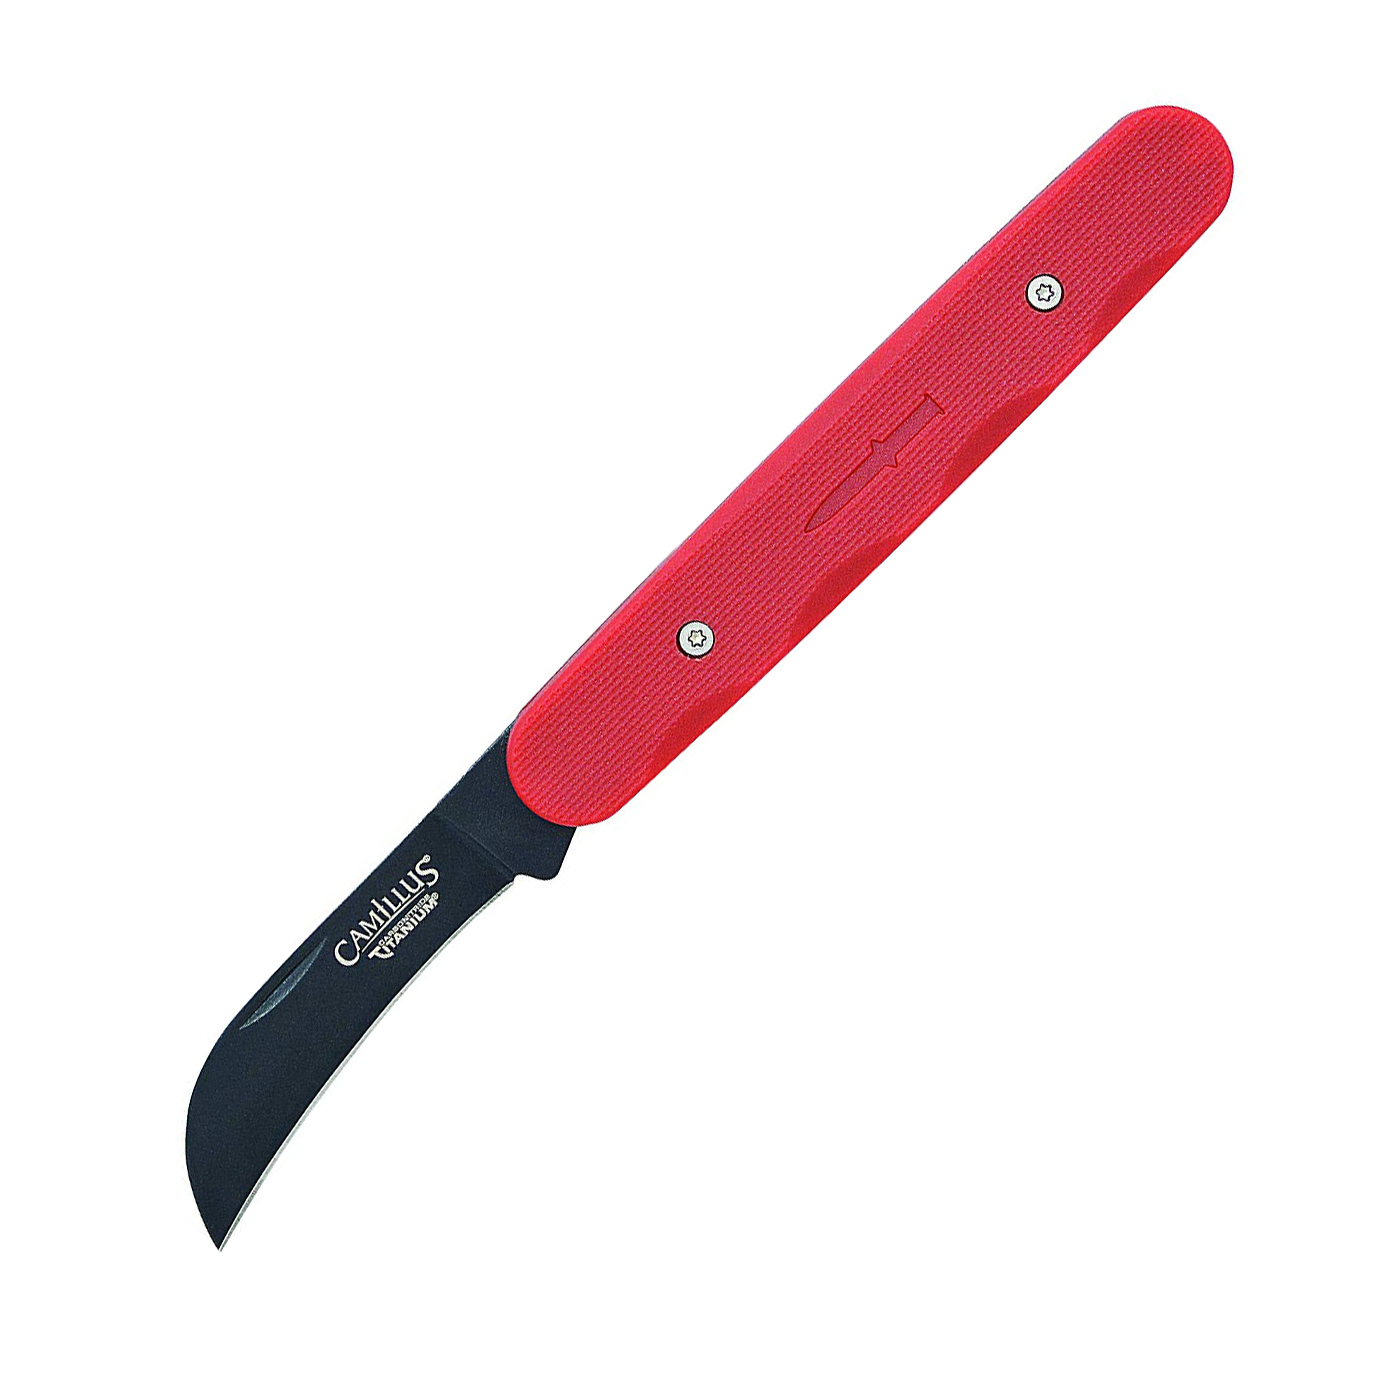 Складной нож Camillus Hawkbill, сталь AUS-8, рукоять термопластик GFN, красный